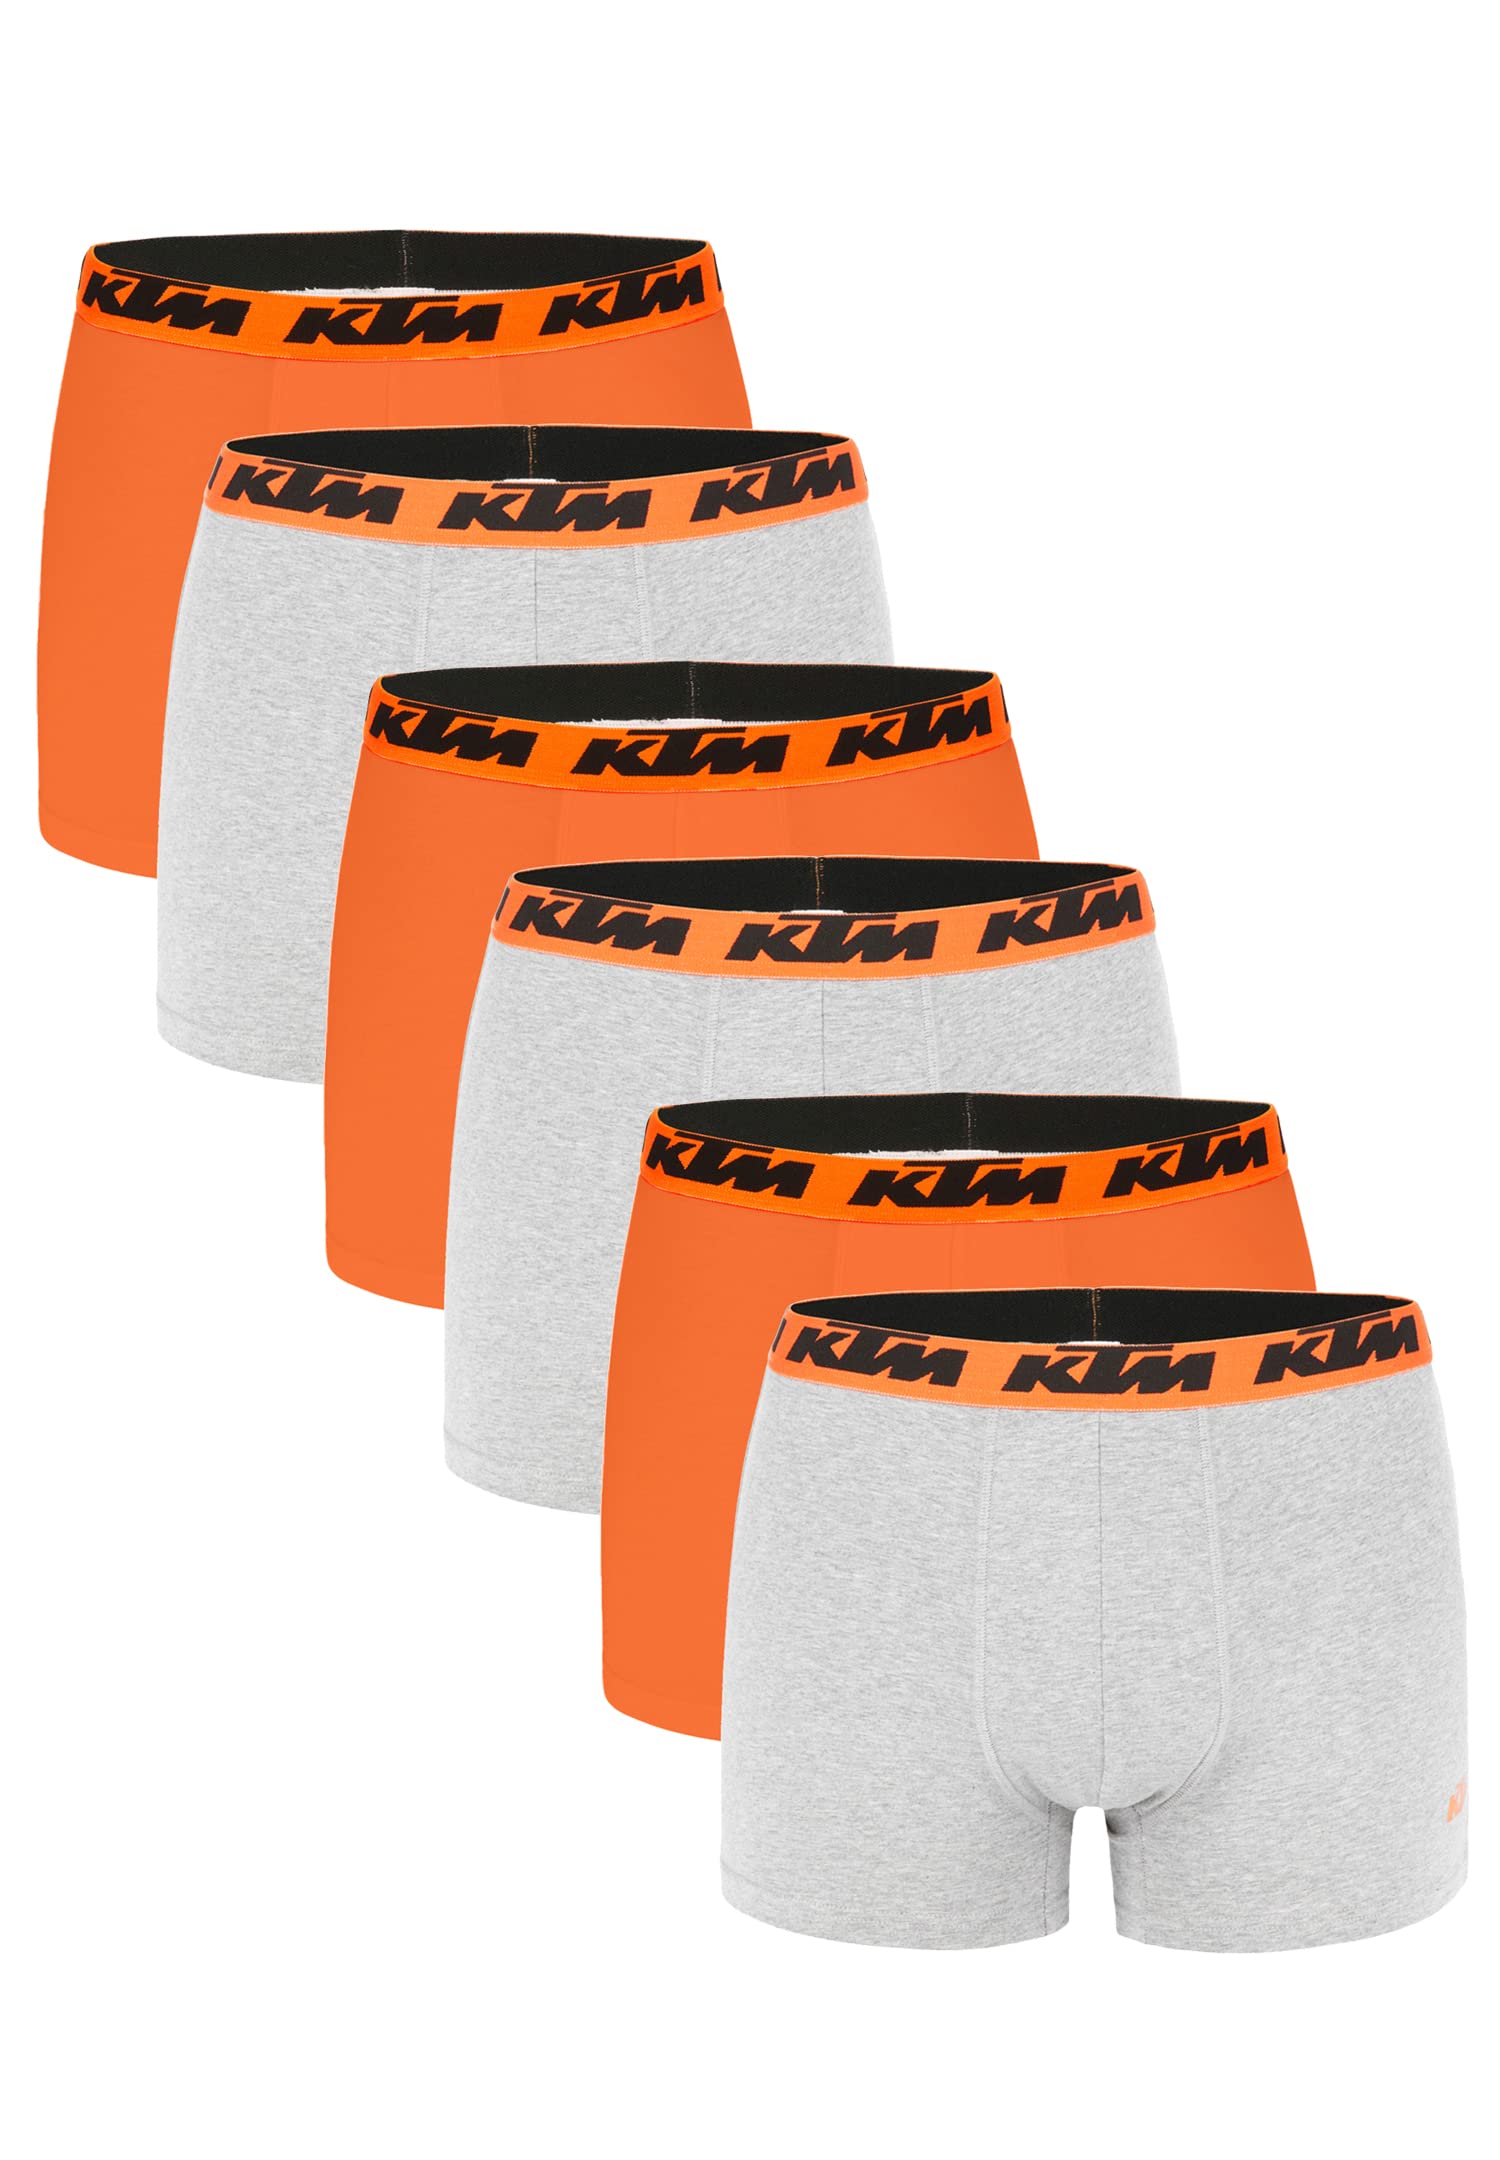 KTM by Freegun Boxershorts für Herren Unterwäsche Pant Men´s Boxer 6 er Pack, Farbe:Light Grey / Orange2, Bekleidungsgröße:M